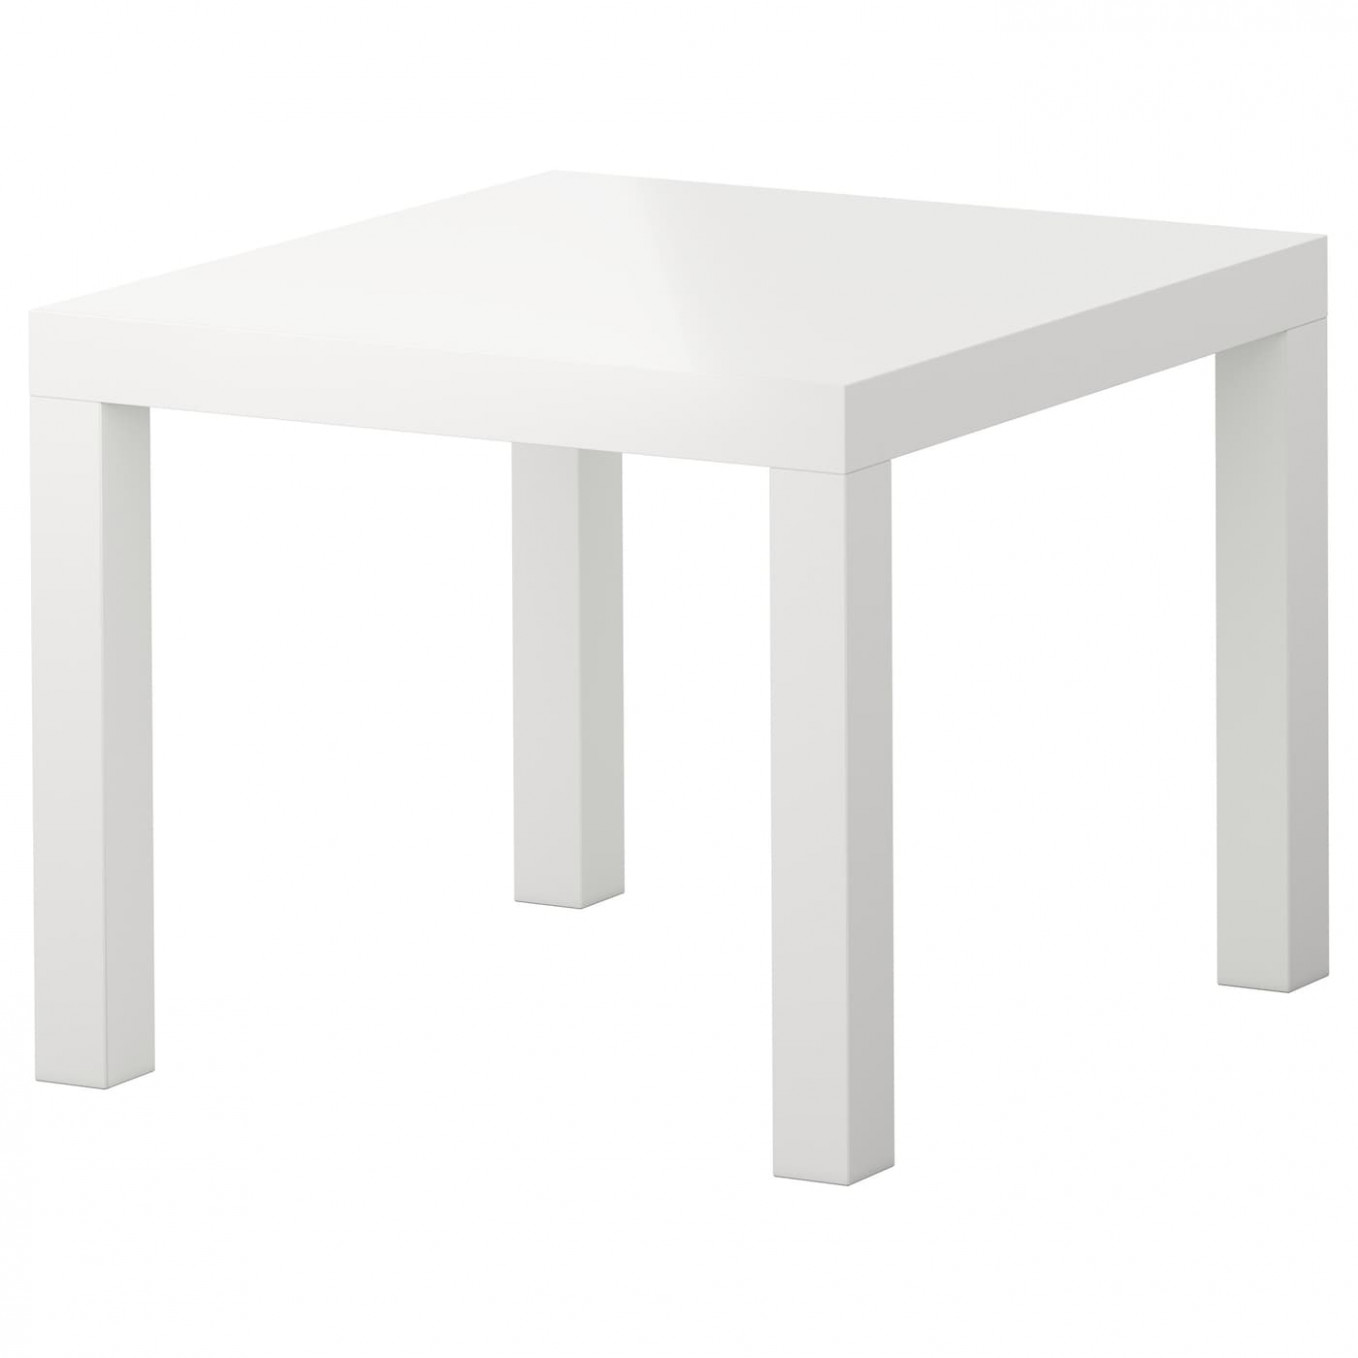 LACK Beistelltisch, Hochglanz weiß, 1x1 cm - IKEA Deutschland